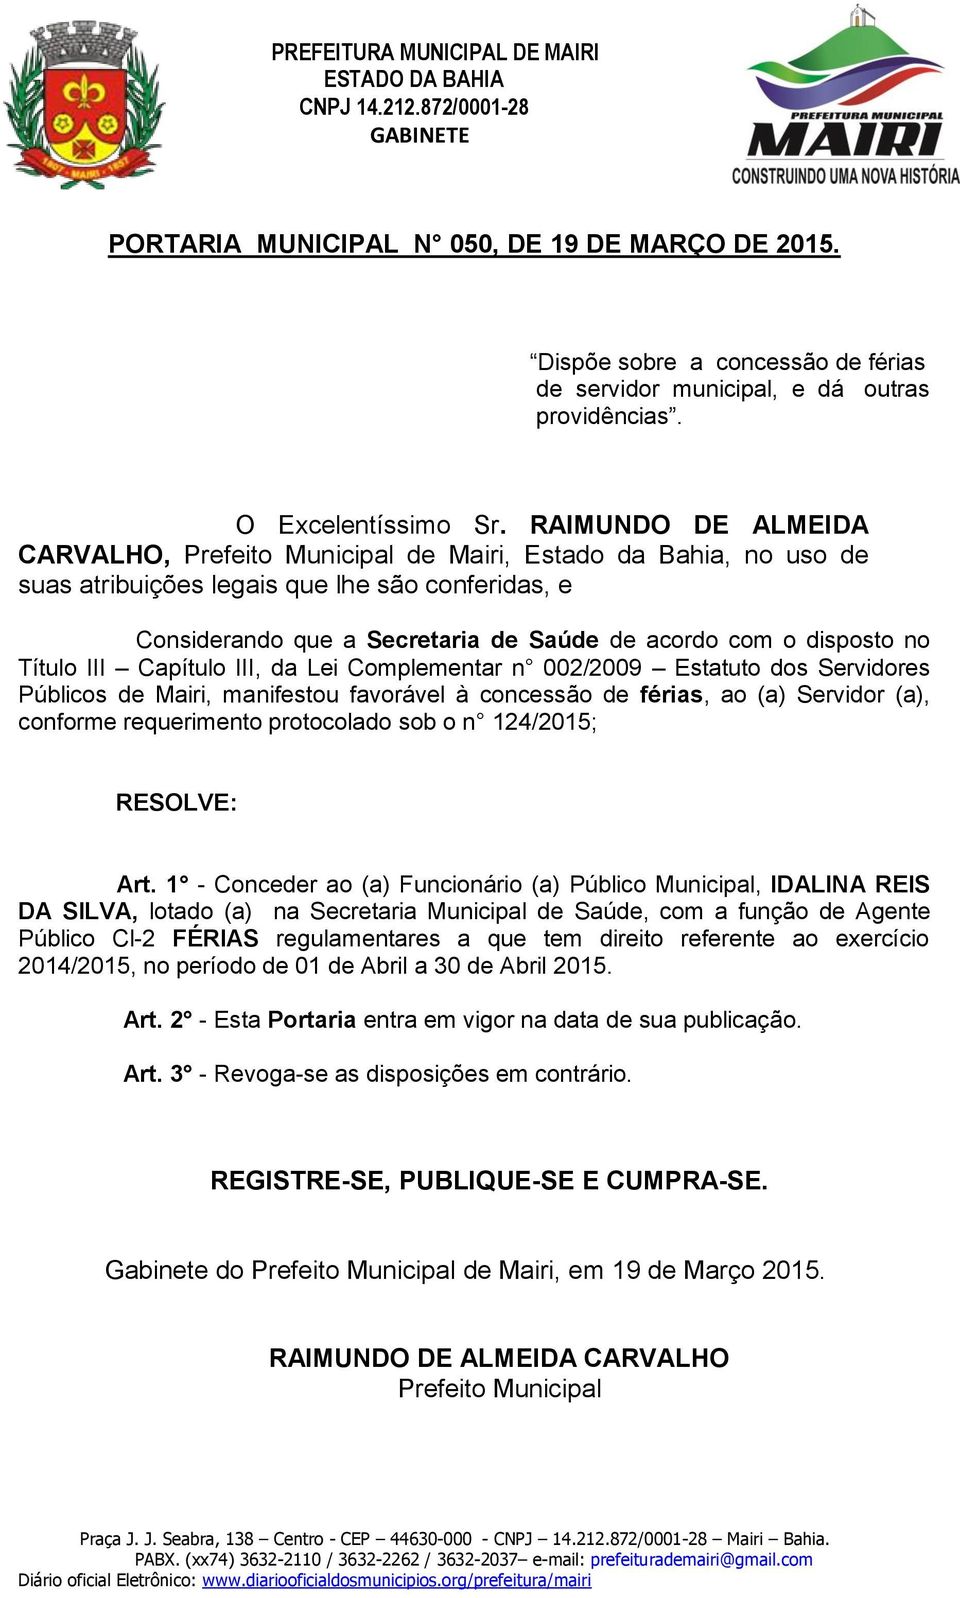 1 - Conceder ao (a) Funcionário (a) Público Municipal, IDALINA REIS DA SILVA, lotado (a) na Secretaria Municipal de